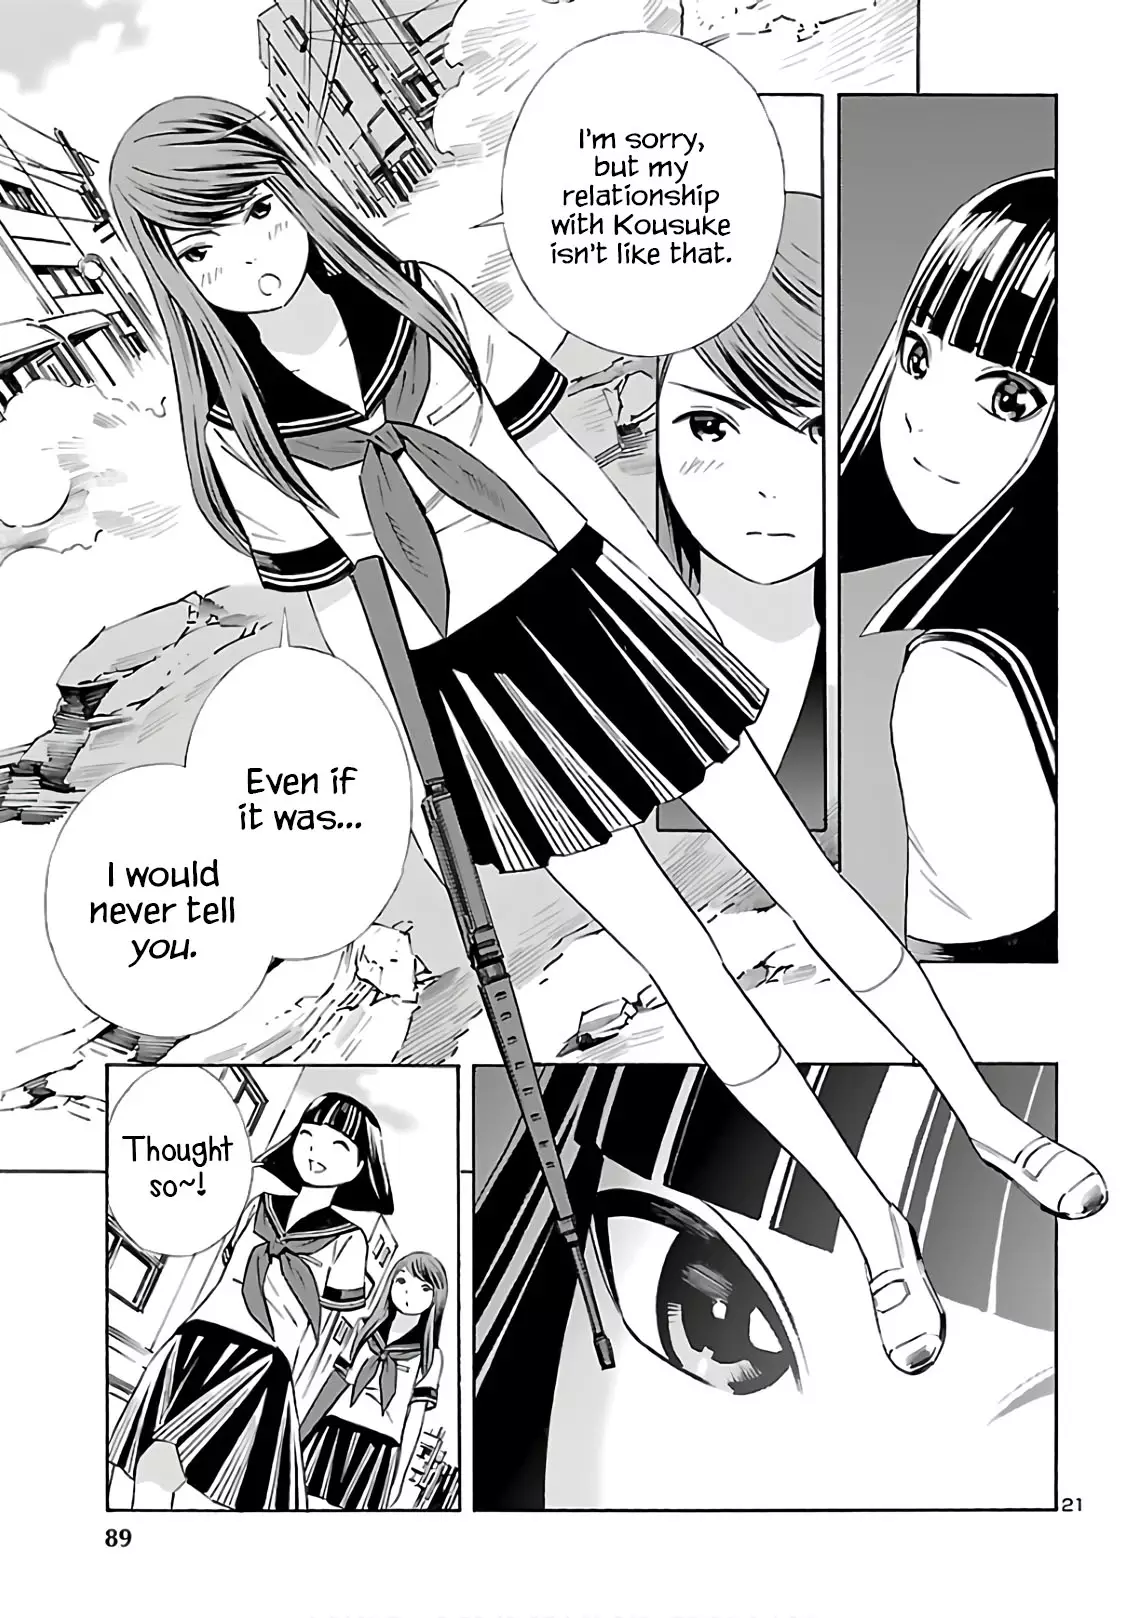 24-Ku No Hanako-San - 9 page 21